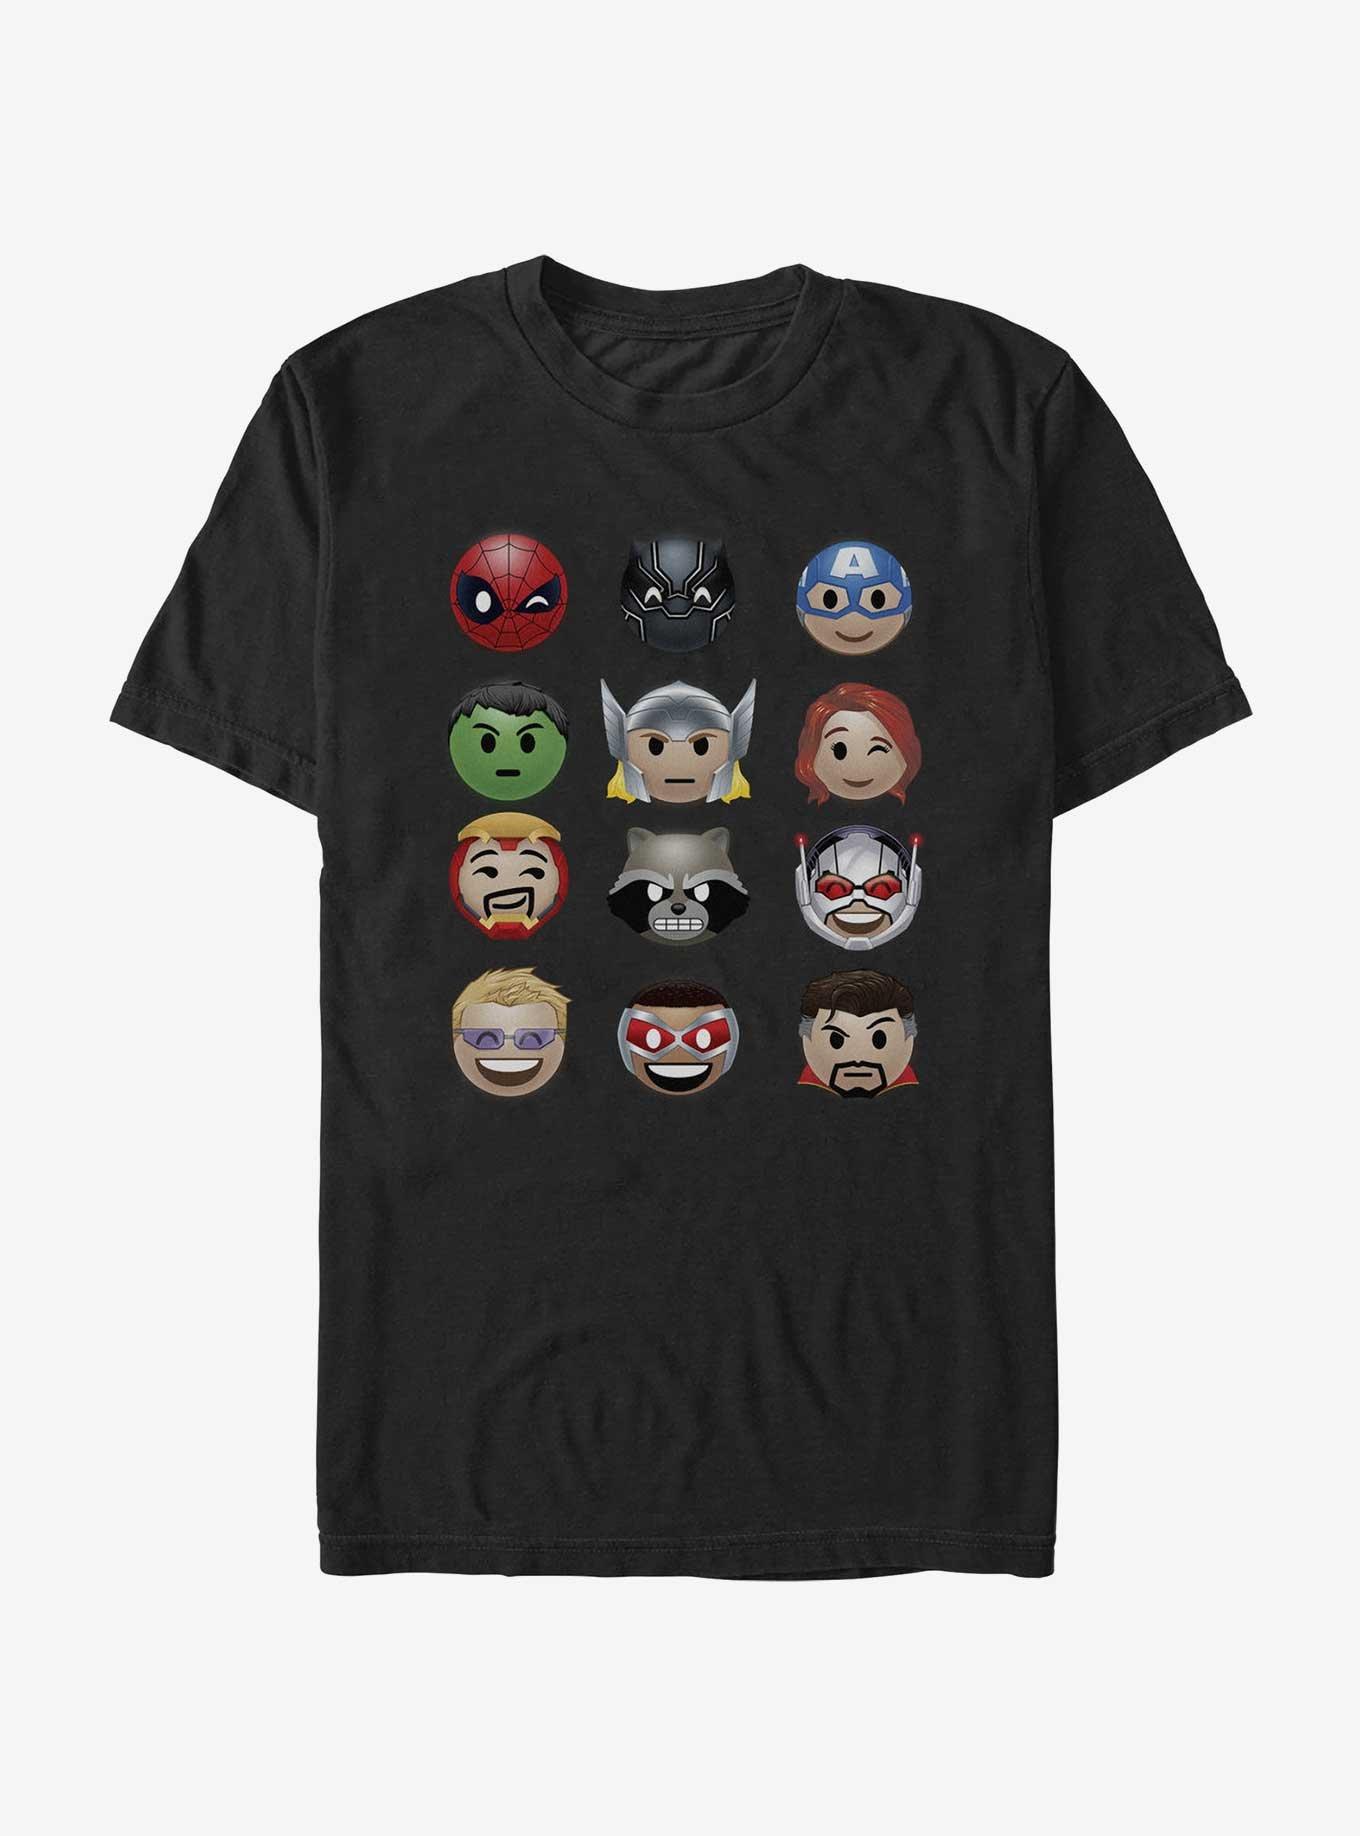 Marvel Avengers Chibi Characters T-Shirt, BLACK, hi-res